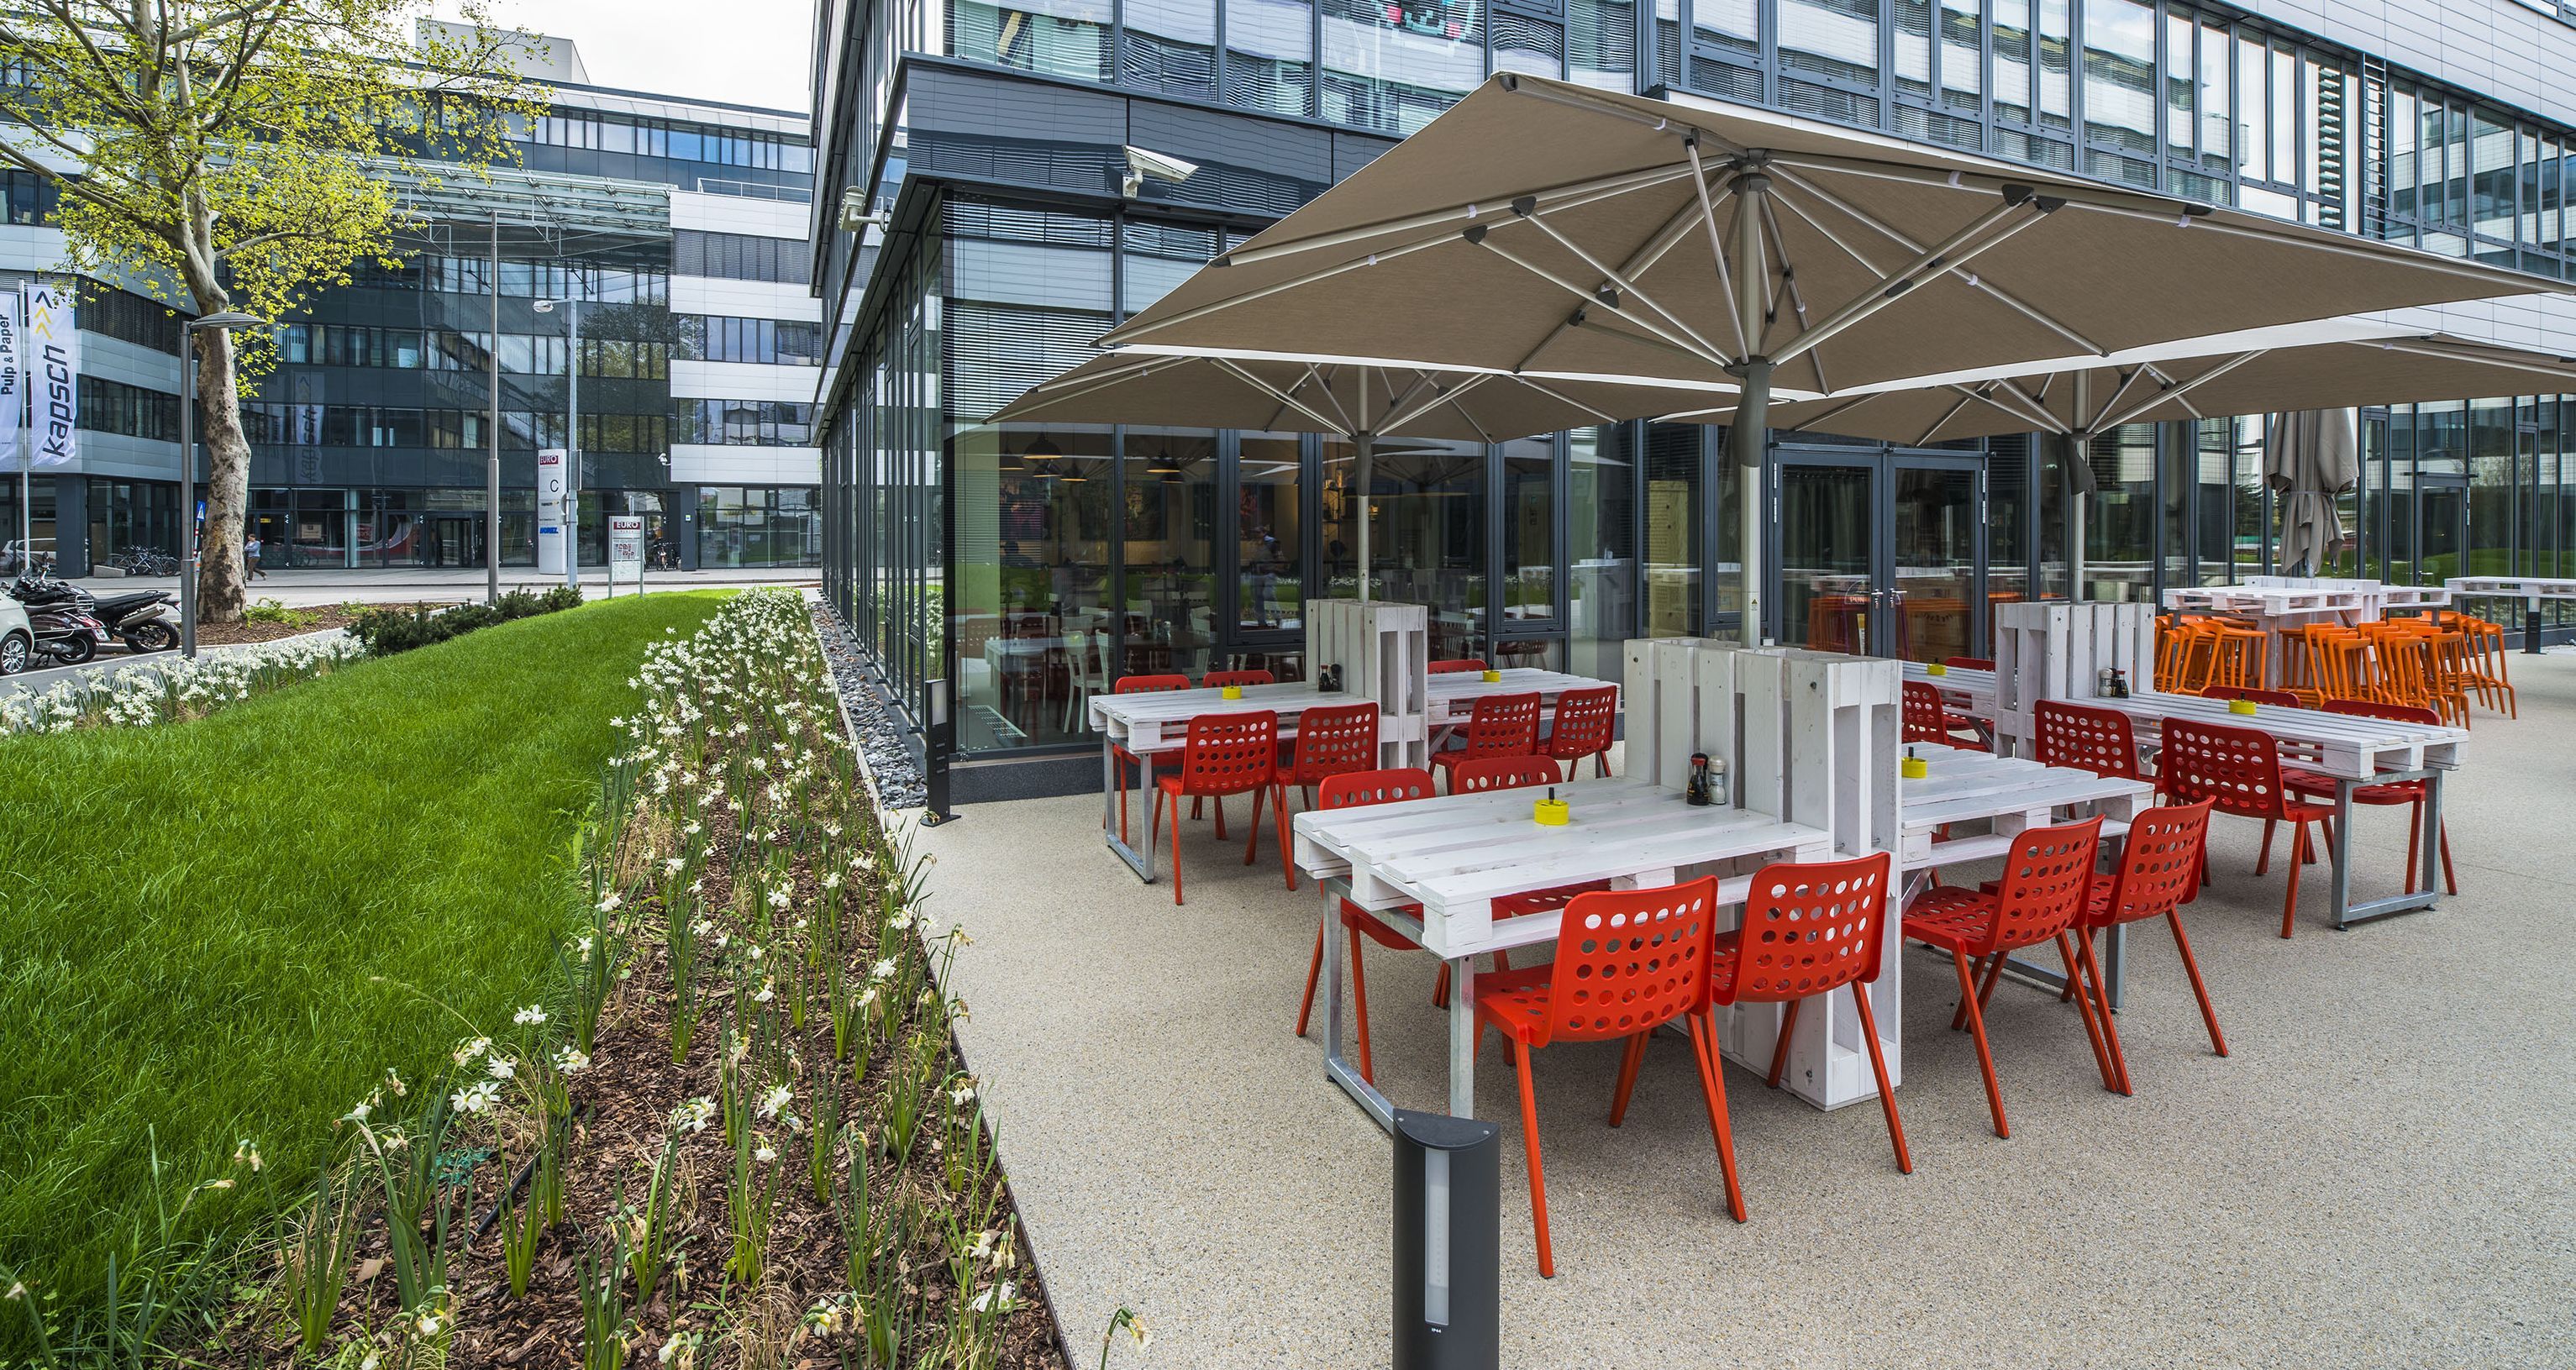 Foto: EURO PLAZA; Restaurant Tuk Tuk; Terrasse neben einer Grünfläche überspannt von einem großen Sonnenschirm; darauf weiße Tische gefertigt aus Europaletten und Metall; rote Stühle.